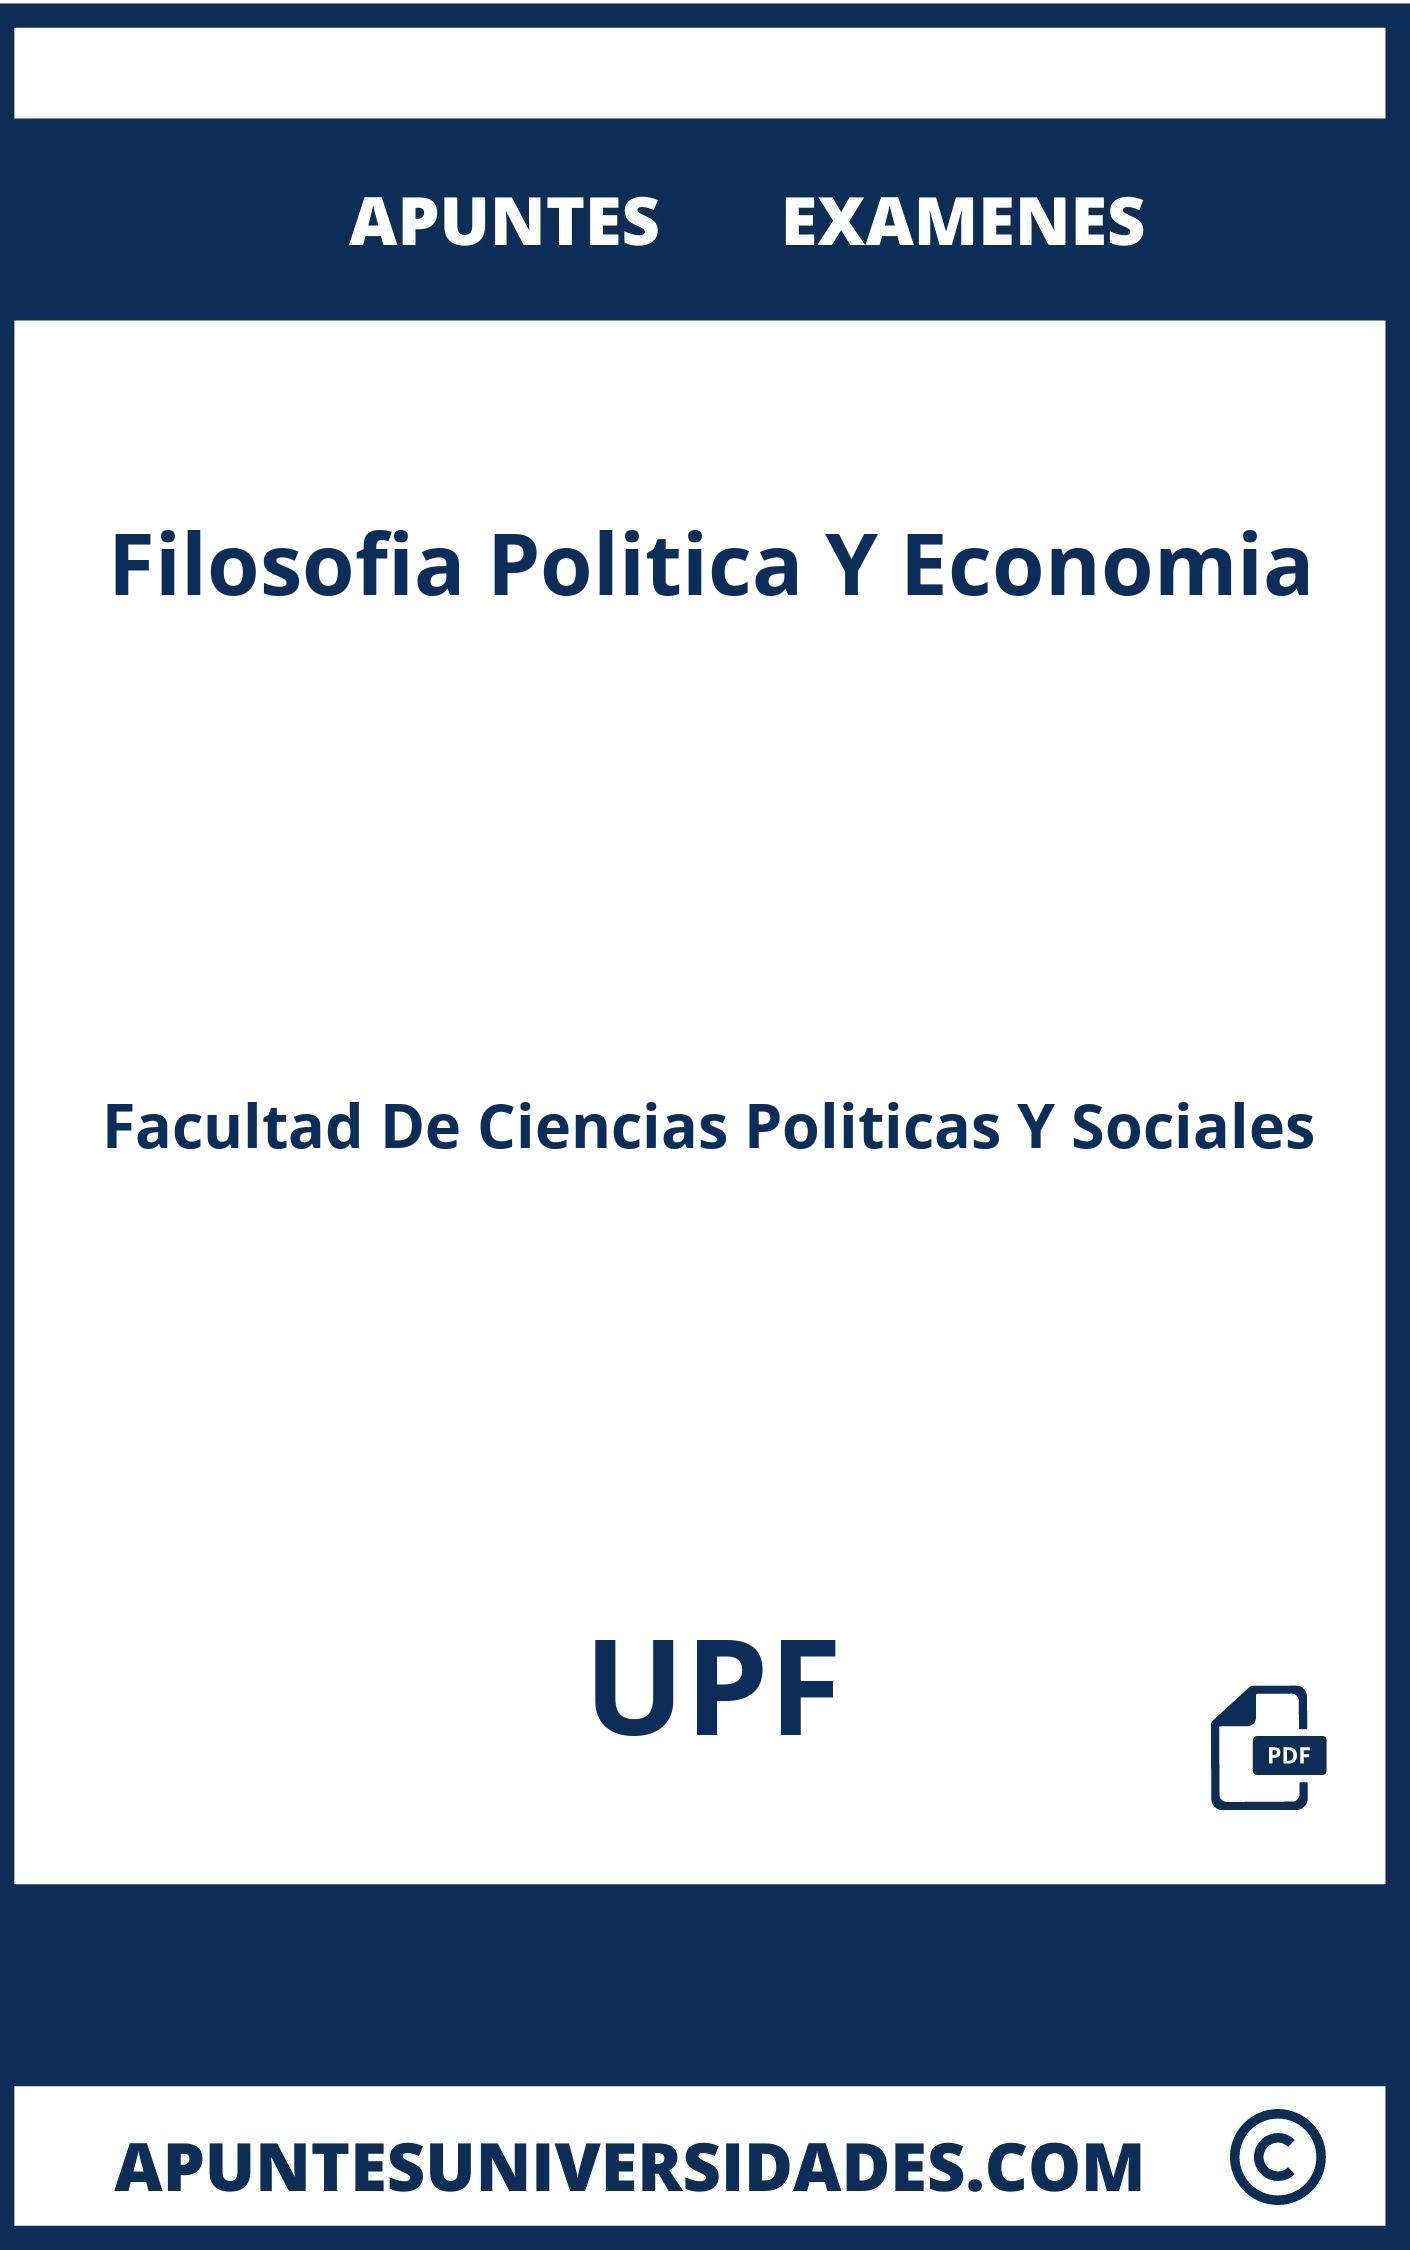 Apuntes y Examenes de Filosofia Politica Y Economia UPF